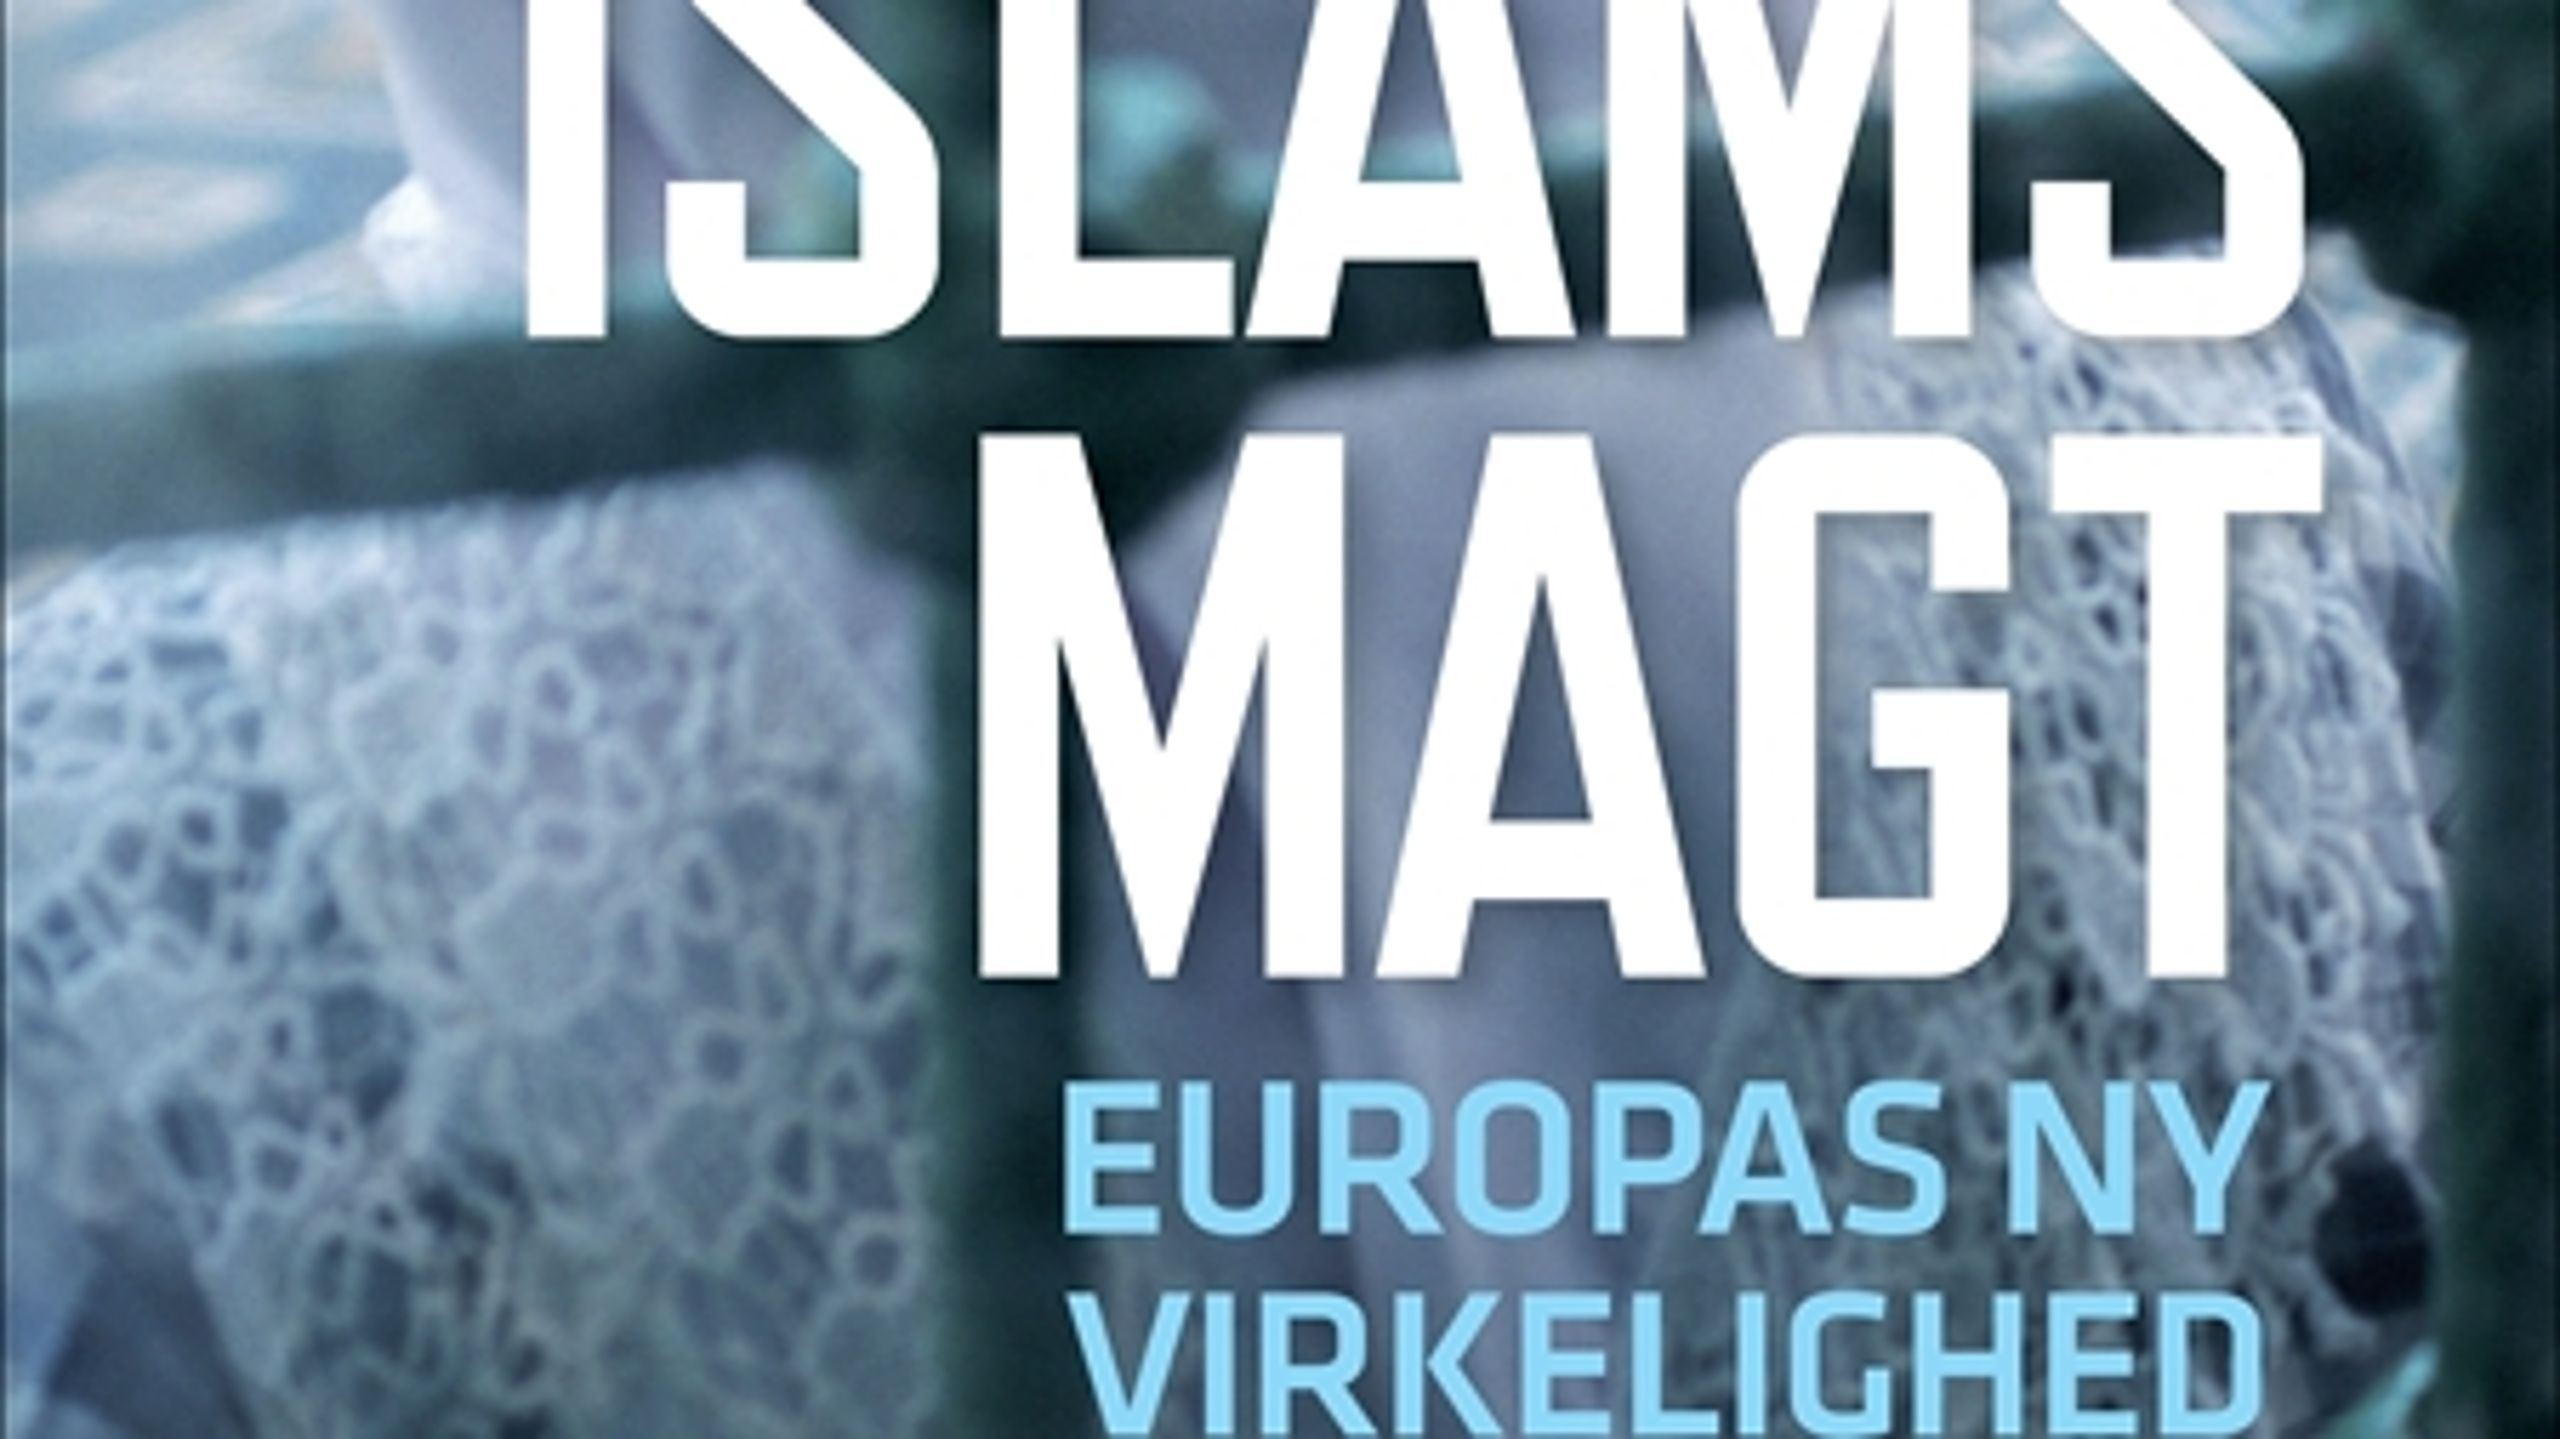 Trods titlen "Islams magt" handler den nye bog fra Karen Jespersen og Ralf Pittelkow mest om det atomiserede multikulturelle samfund og truslerne mod den verdslige demokratiske stat.